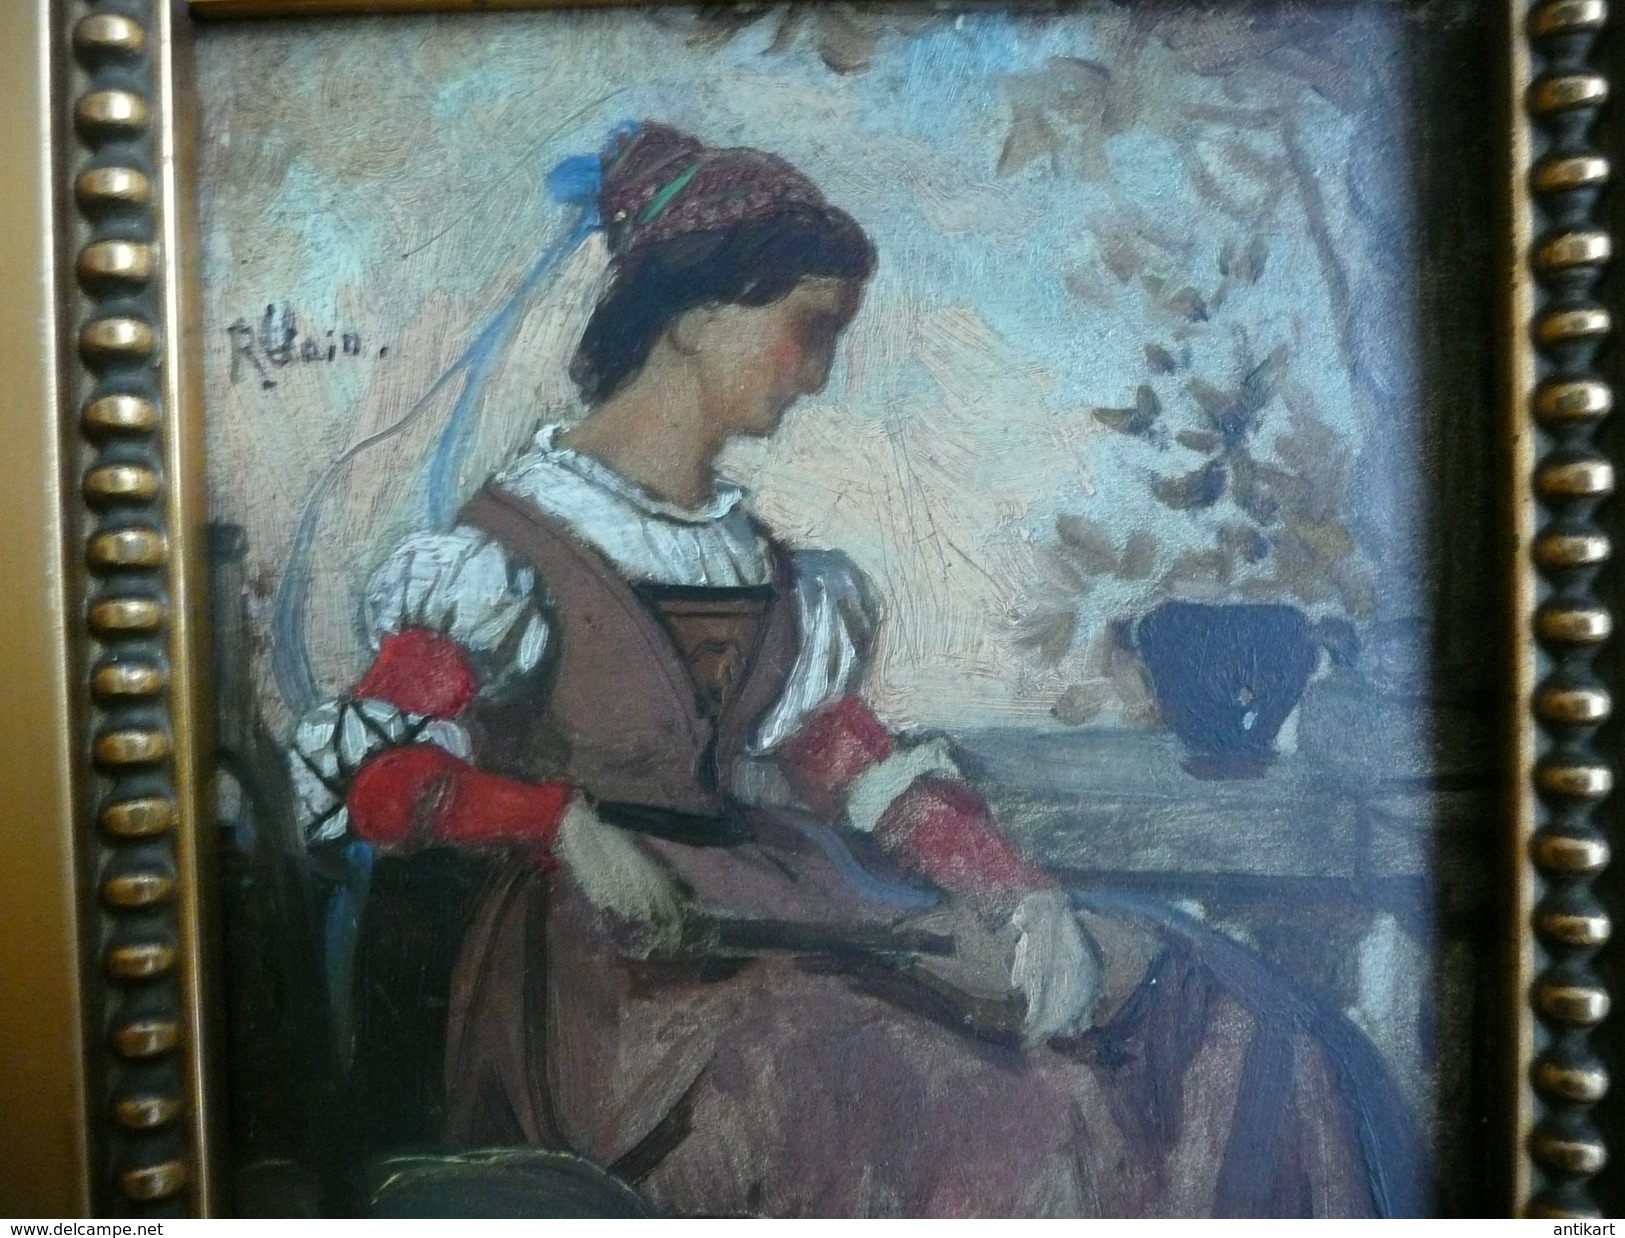 R. Clair, 1877 - Portrait de musicienne néorenaissance huile sur panneau